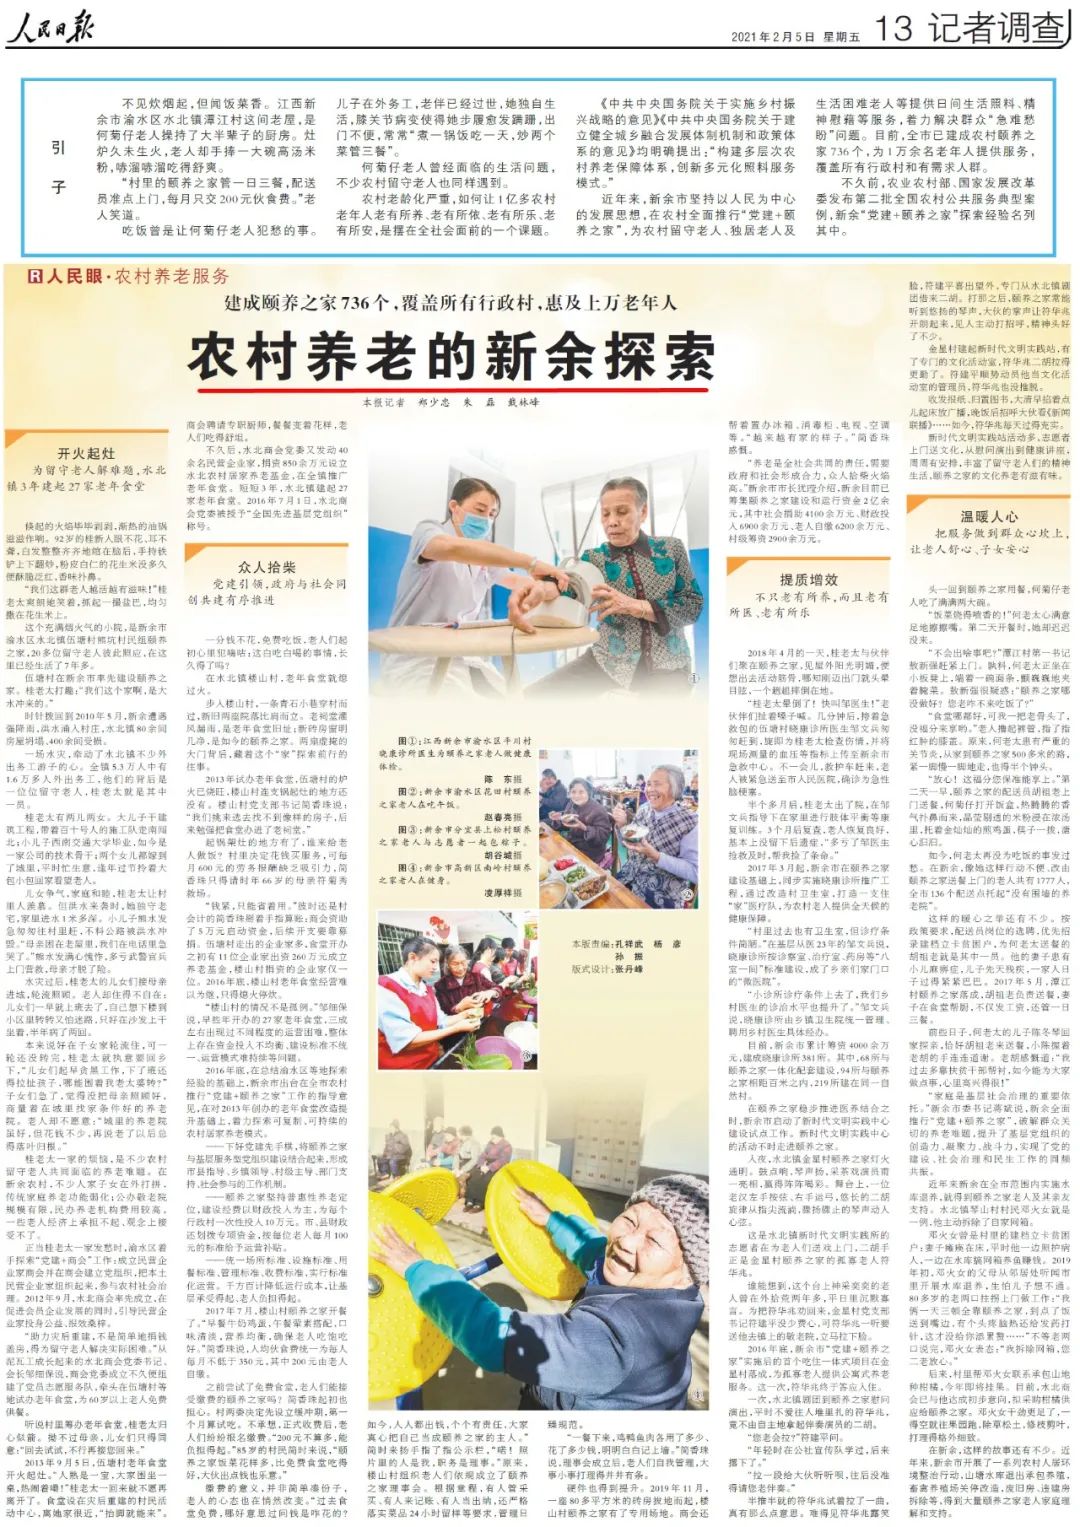 江苏省2021年退休人员基本养老金调整方案出台--射阳日报